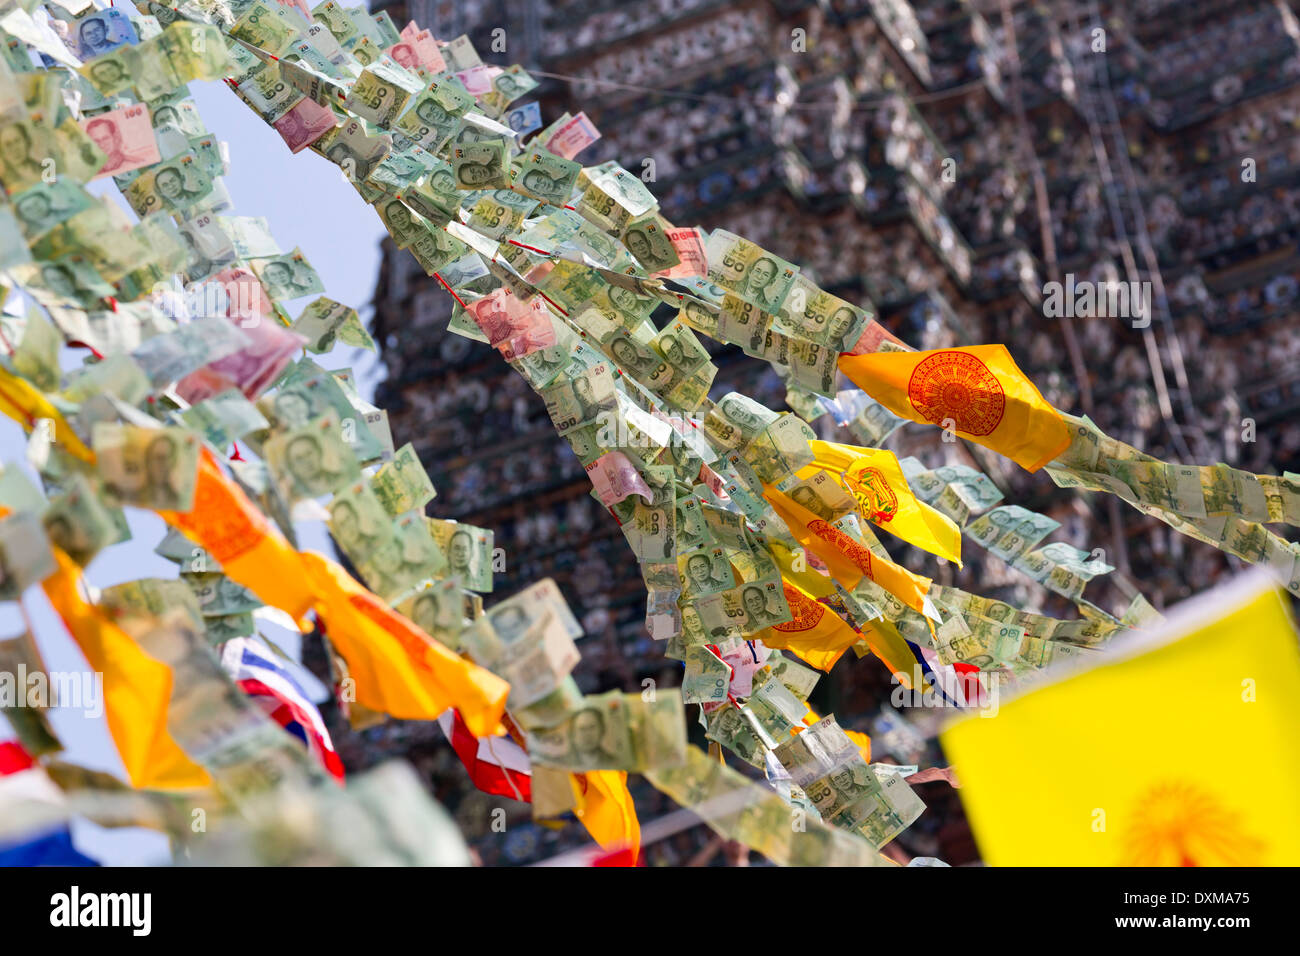 Le erogazioni liberali in denaro effettuate a il tempio di Wat Arun a Bangkok, in Thailandia Foto Stock